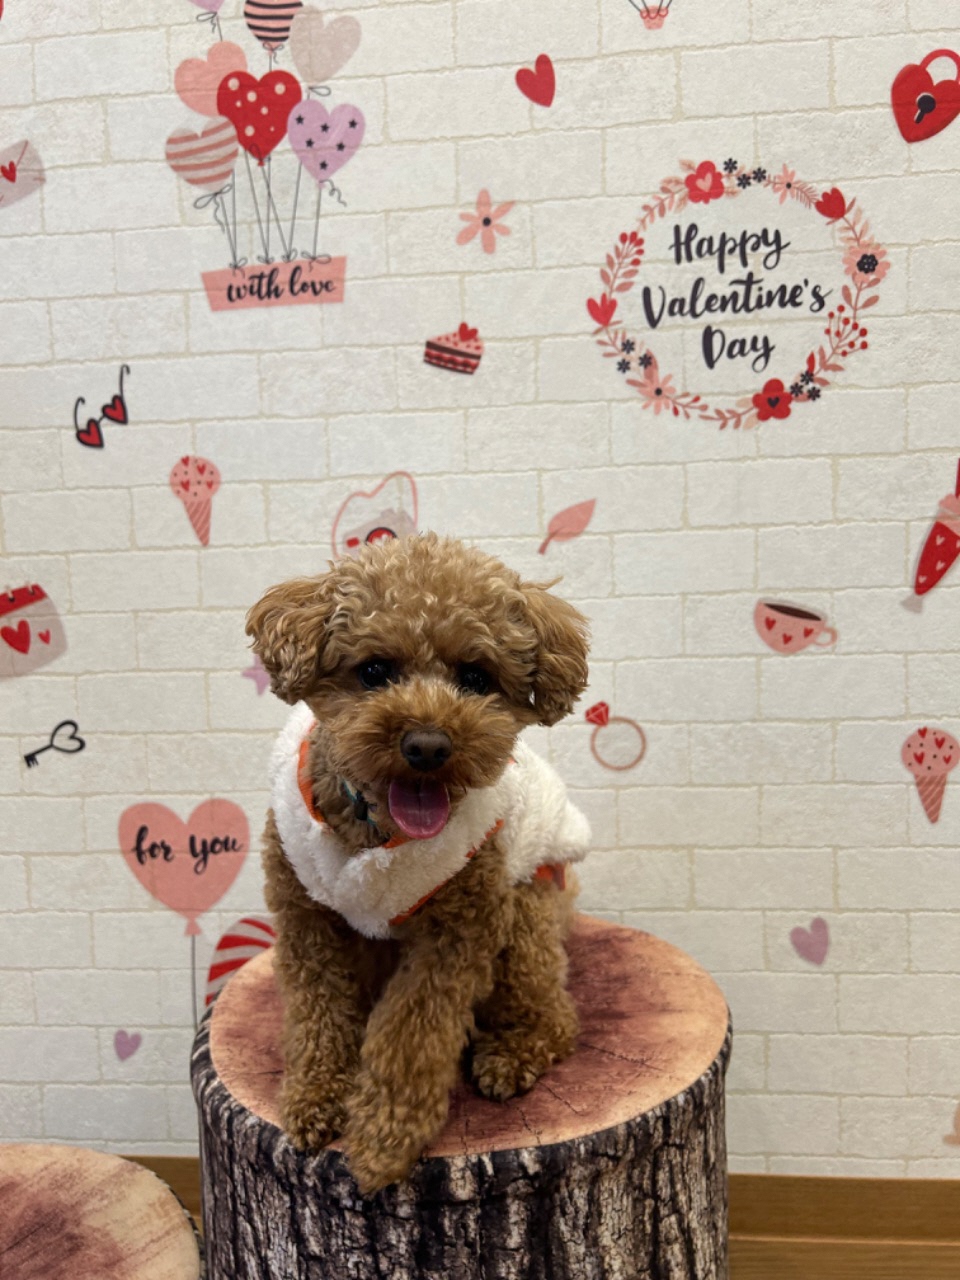 バレンタインの絵が描かれている壁の前で笑っている犬の写真